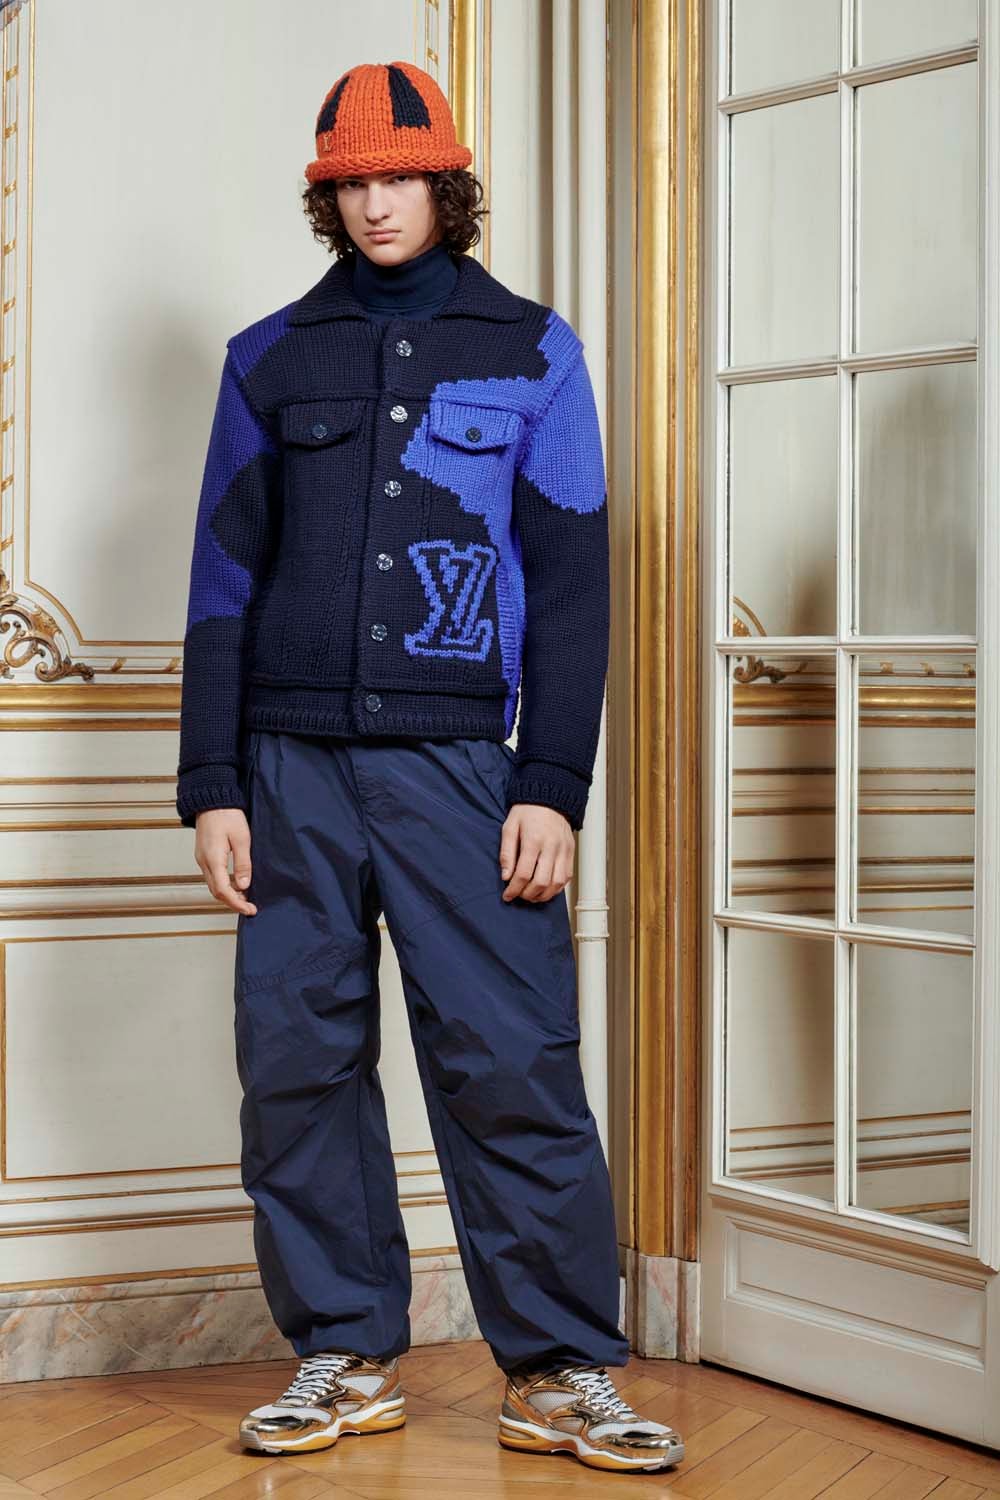 ルイ・ヴィトンが伝統にフォーカスした2020秋冬プレコレクションを発表 Louis Vuitton Mens Pre-Collection Fall/Winter 2020